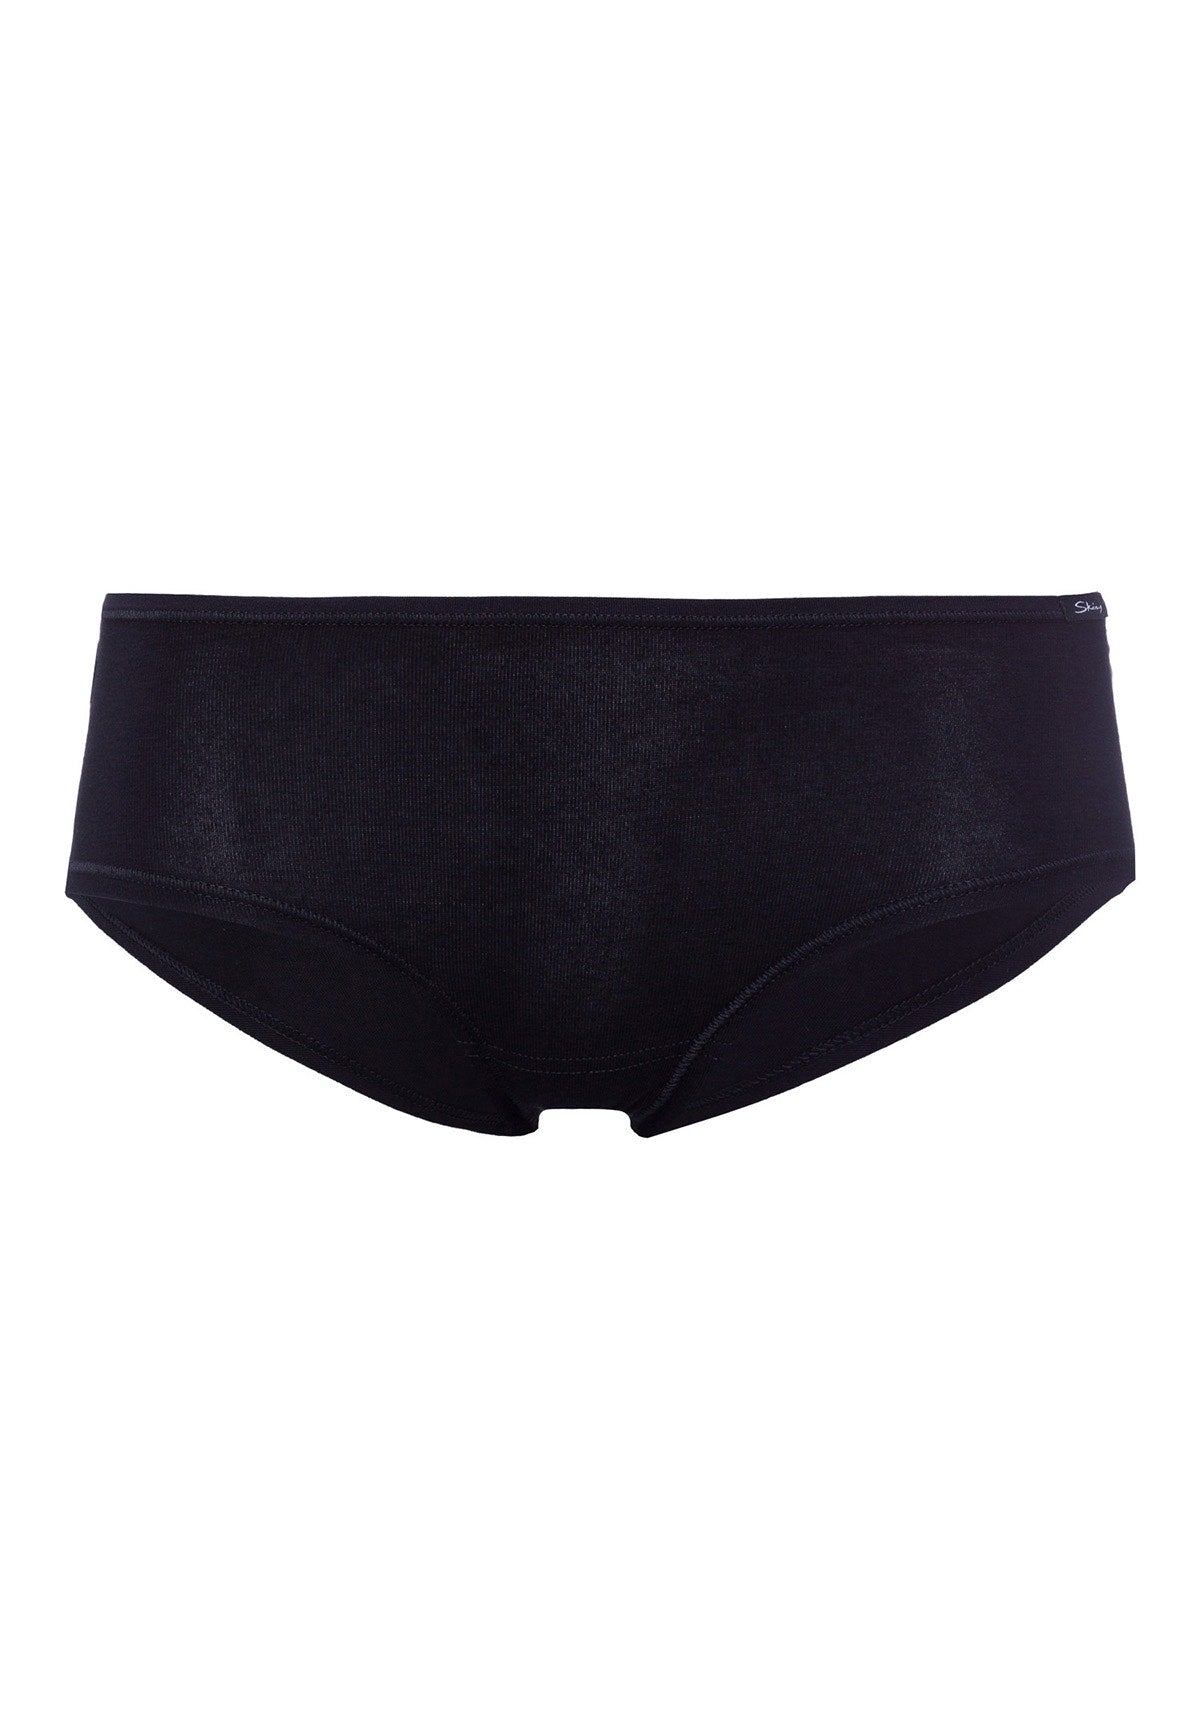 Skiny Damen Panty 2er Pack Advantage Cotton (Black)